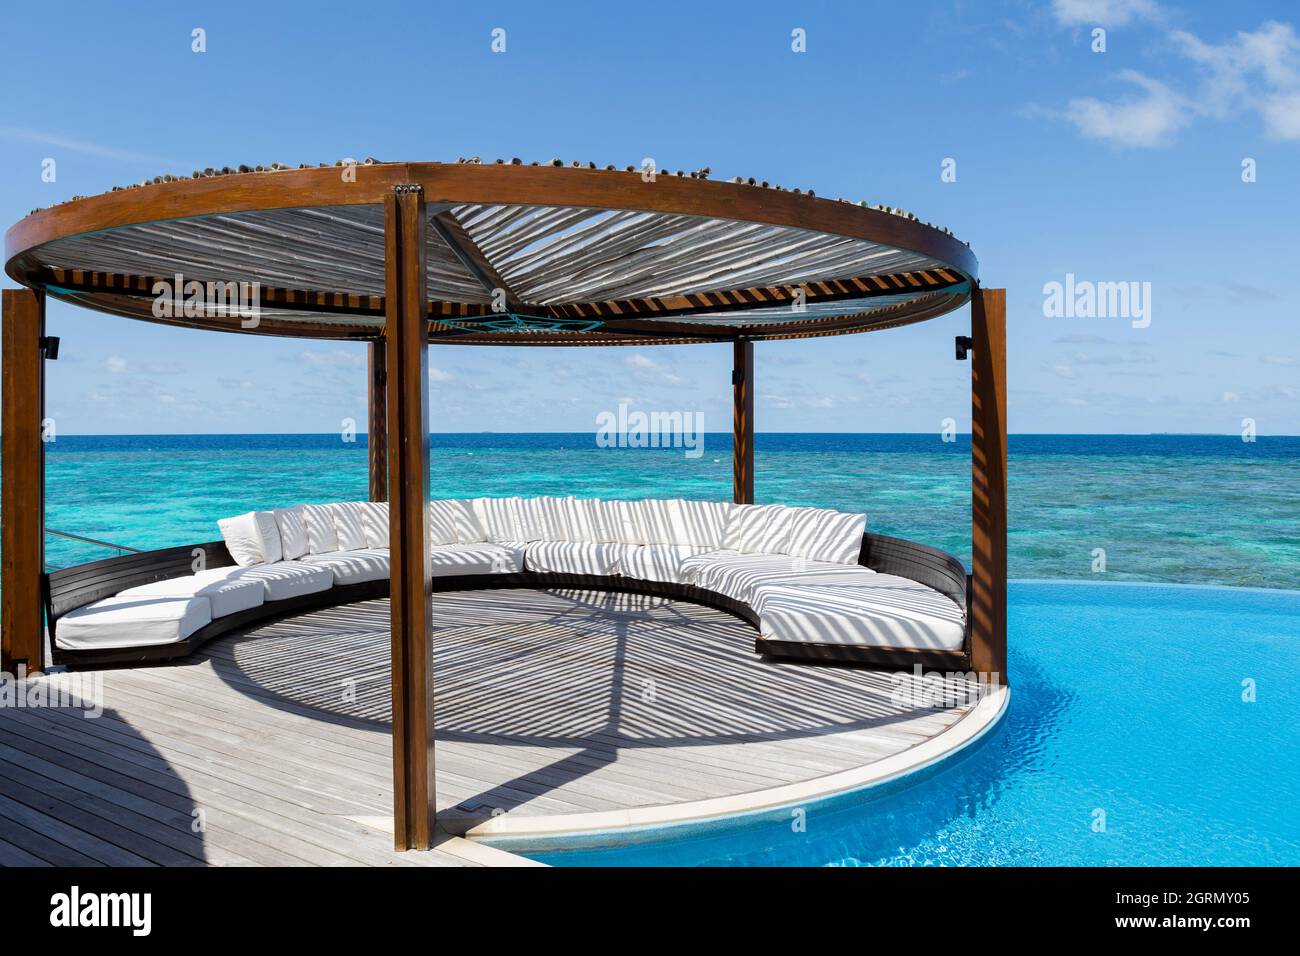 La zona de estar exterior con piscina y el mar real en Maldivas Foto de stock